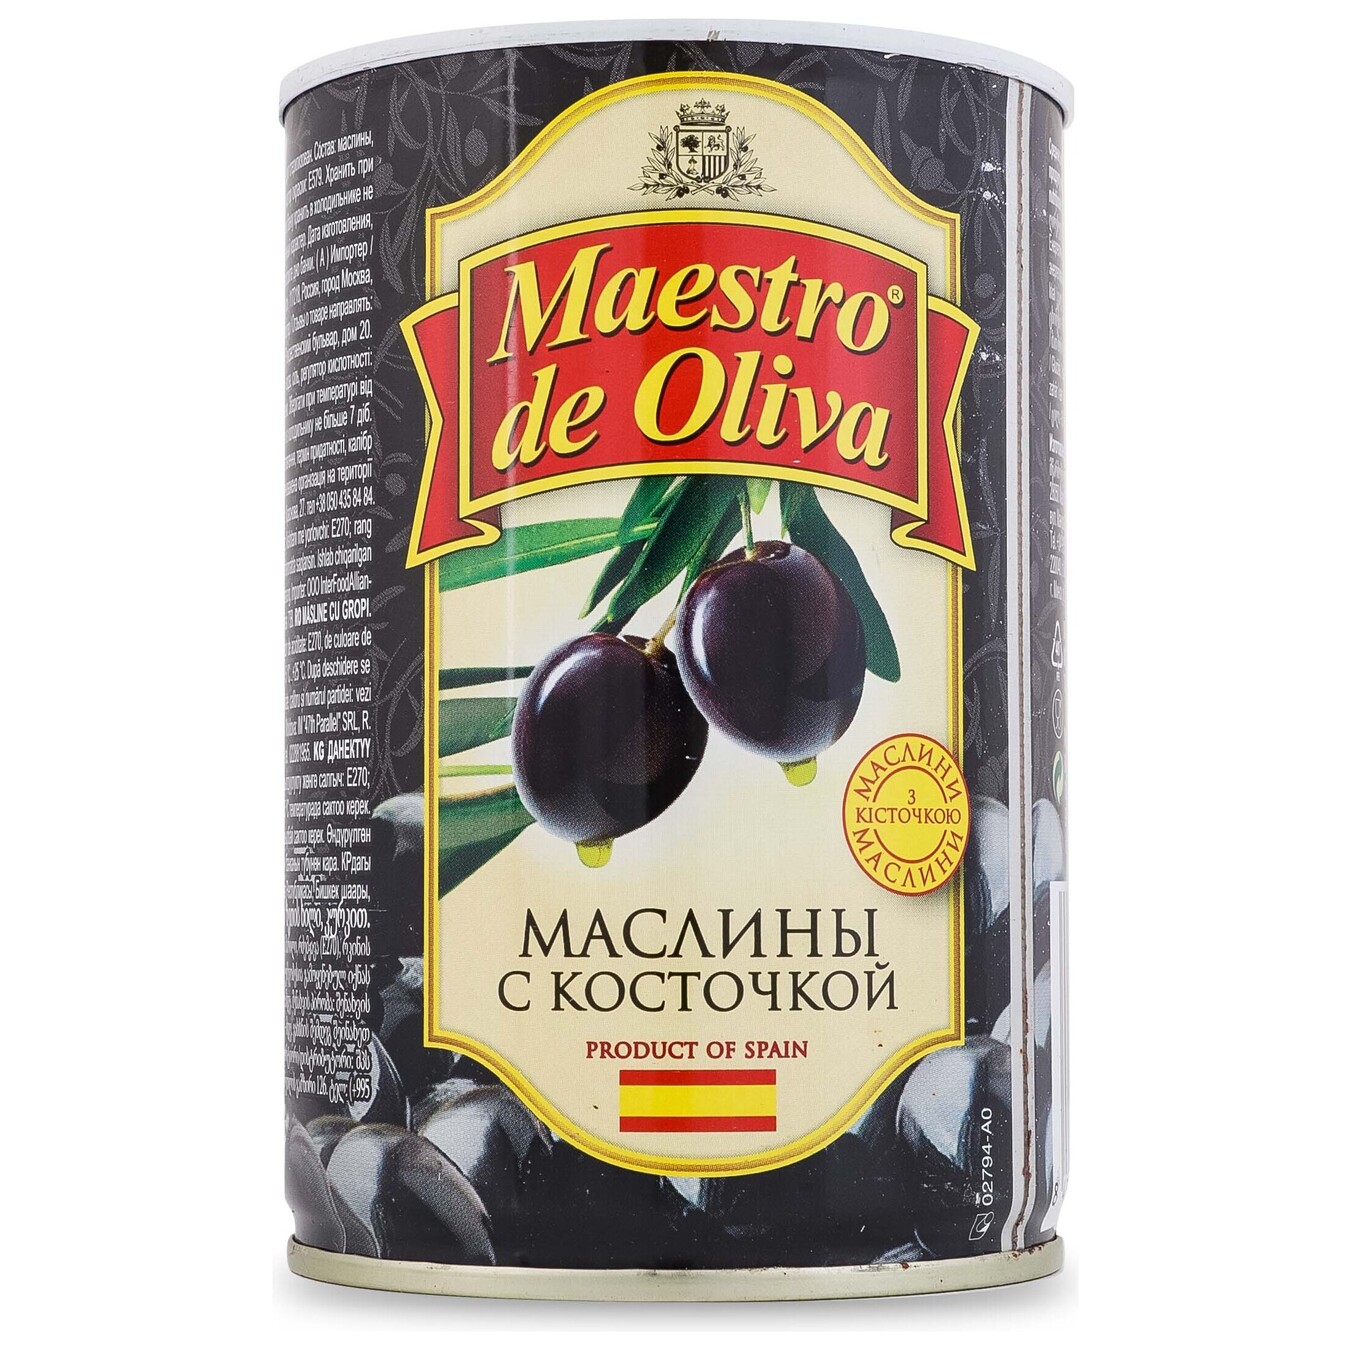 Маслини Maestro de Oliva чорні з кісточкою 420г